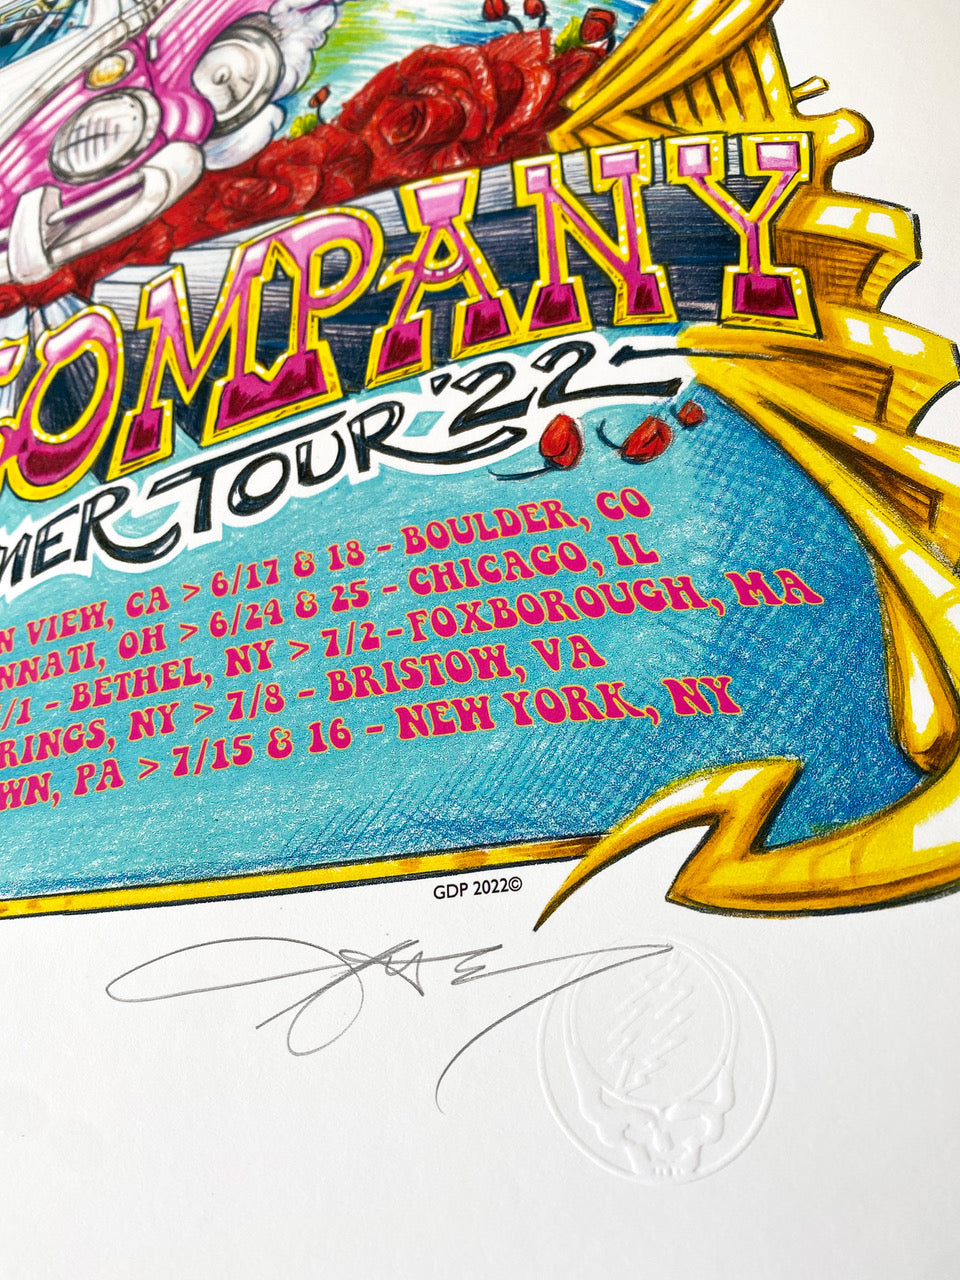 AJ Masthay "Dead & Co. - VIP Summer Tour 2022"